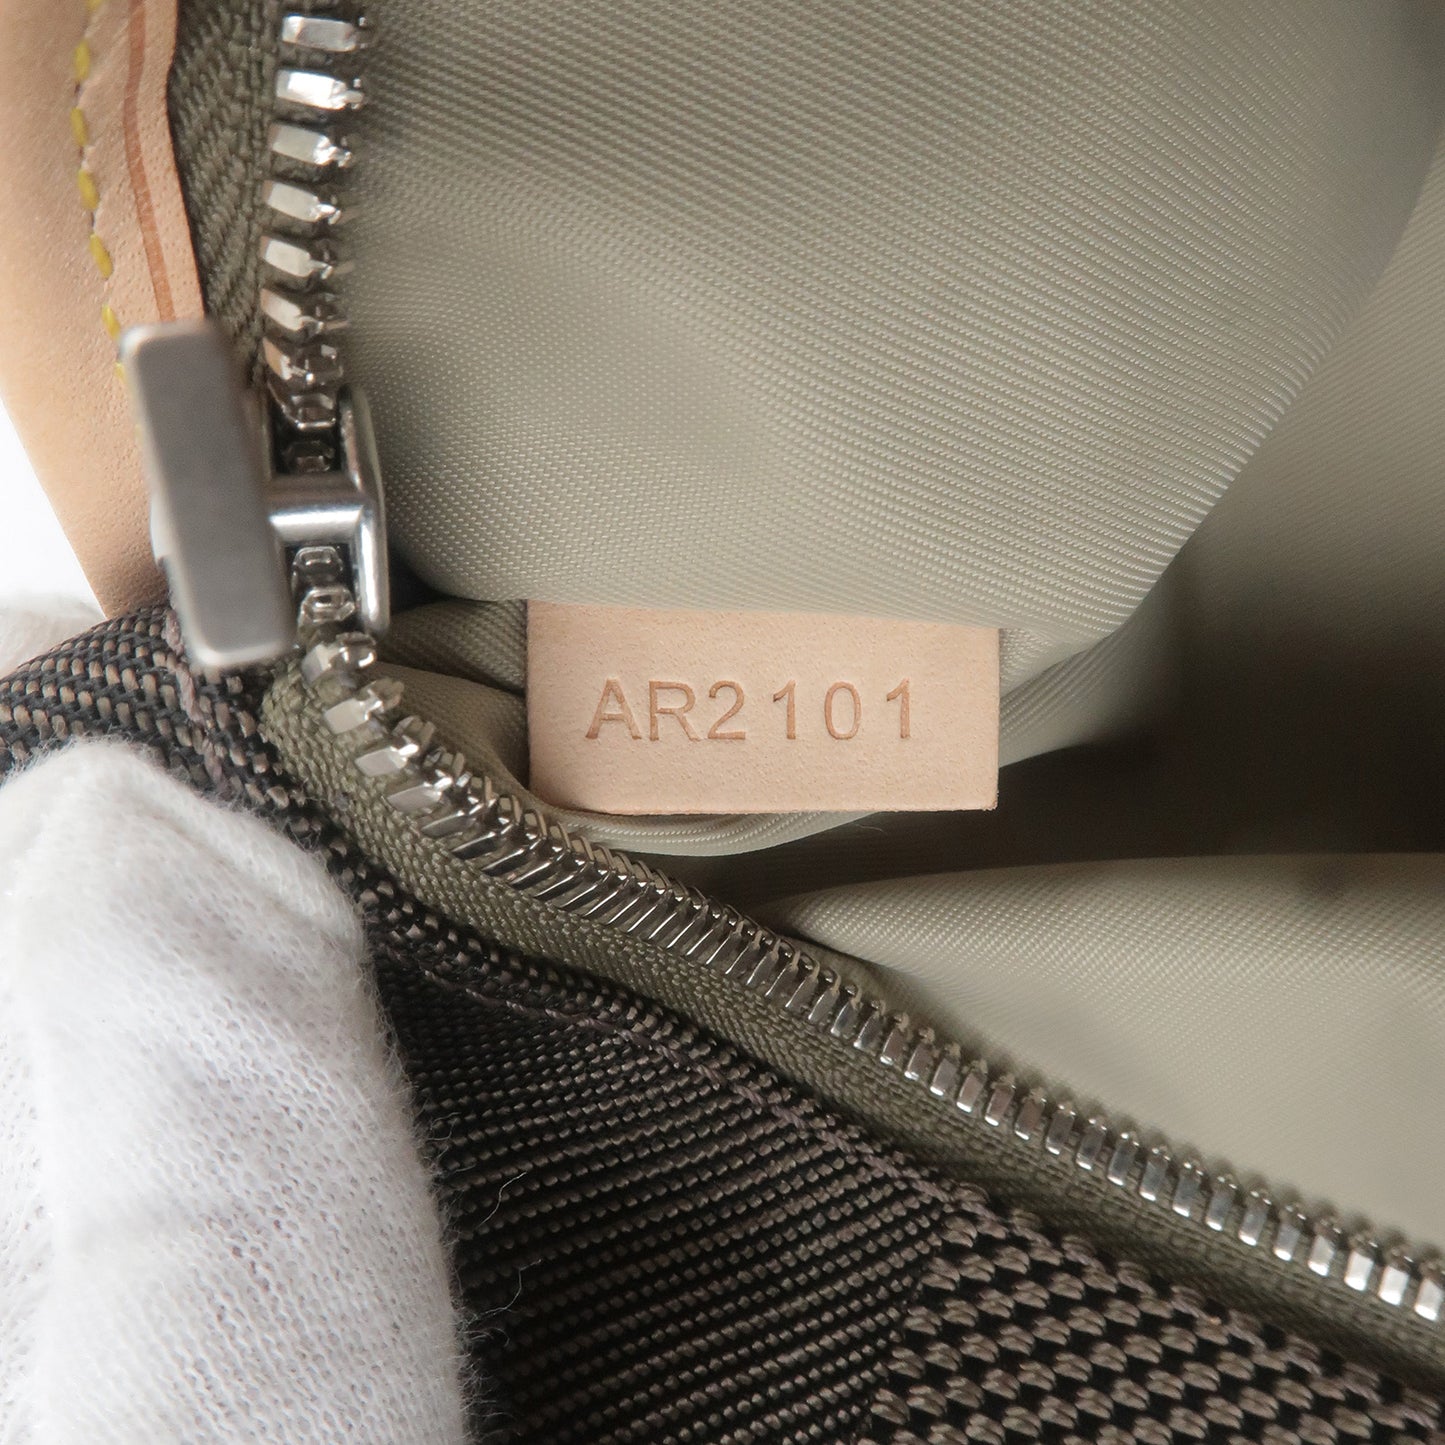 Louis Vuitton Damier Geant Acrobat Teal Waist Bag M93619